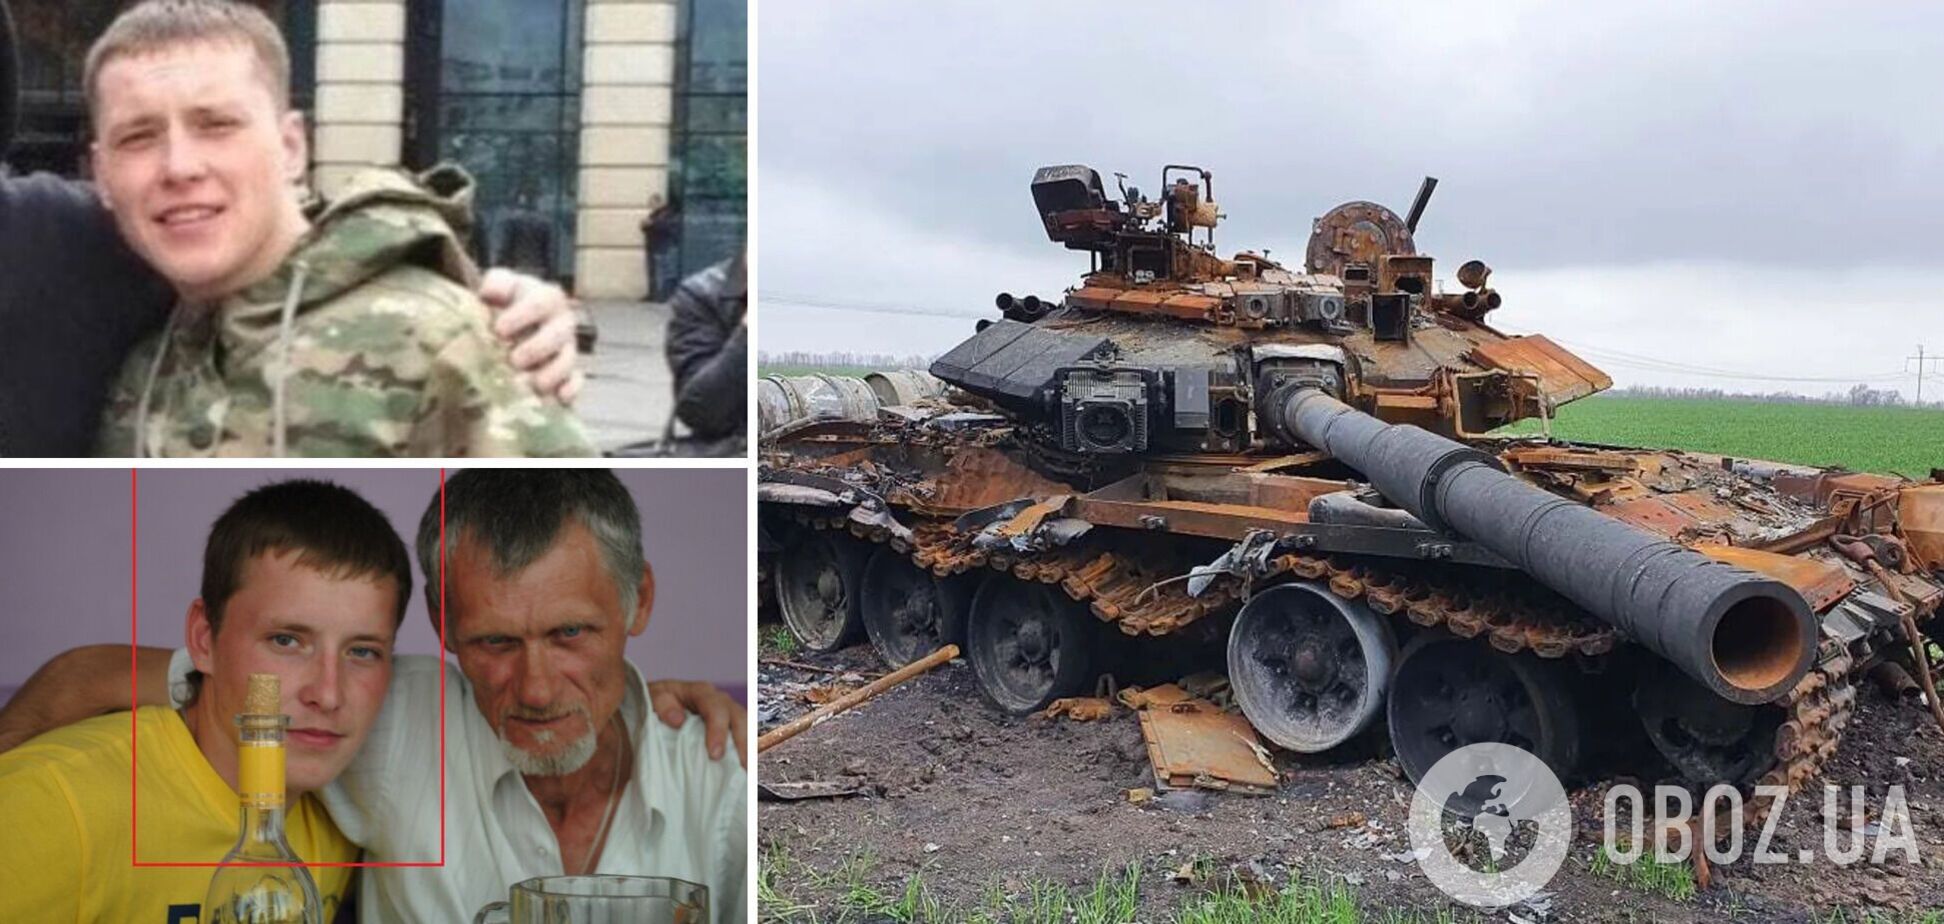 В Украине ликвидировали оккупанта из Мурманска, который 'пропагандировал' трезвый образ жизни, но сам любил выпить. Фото